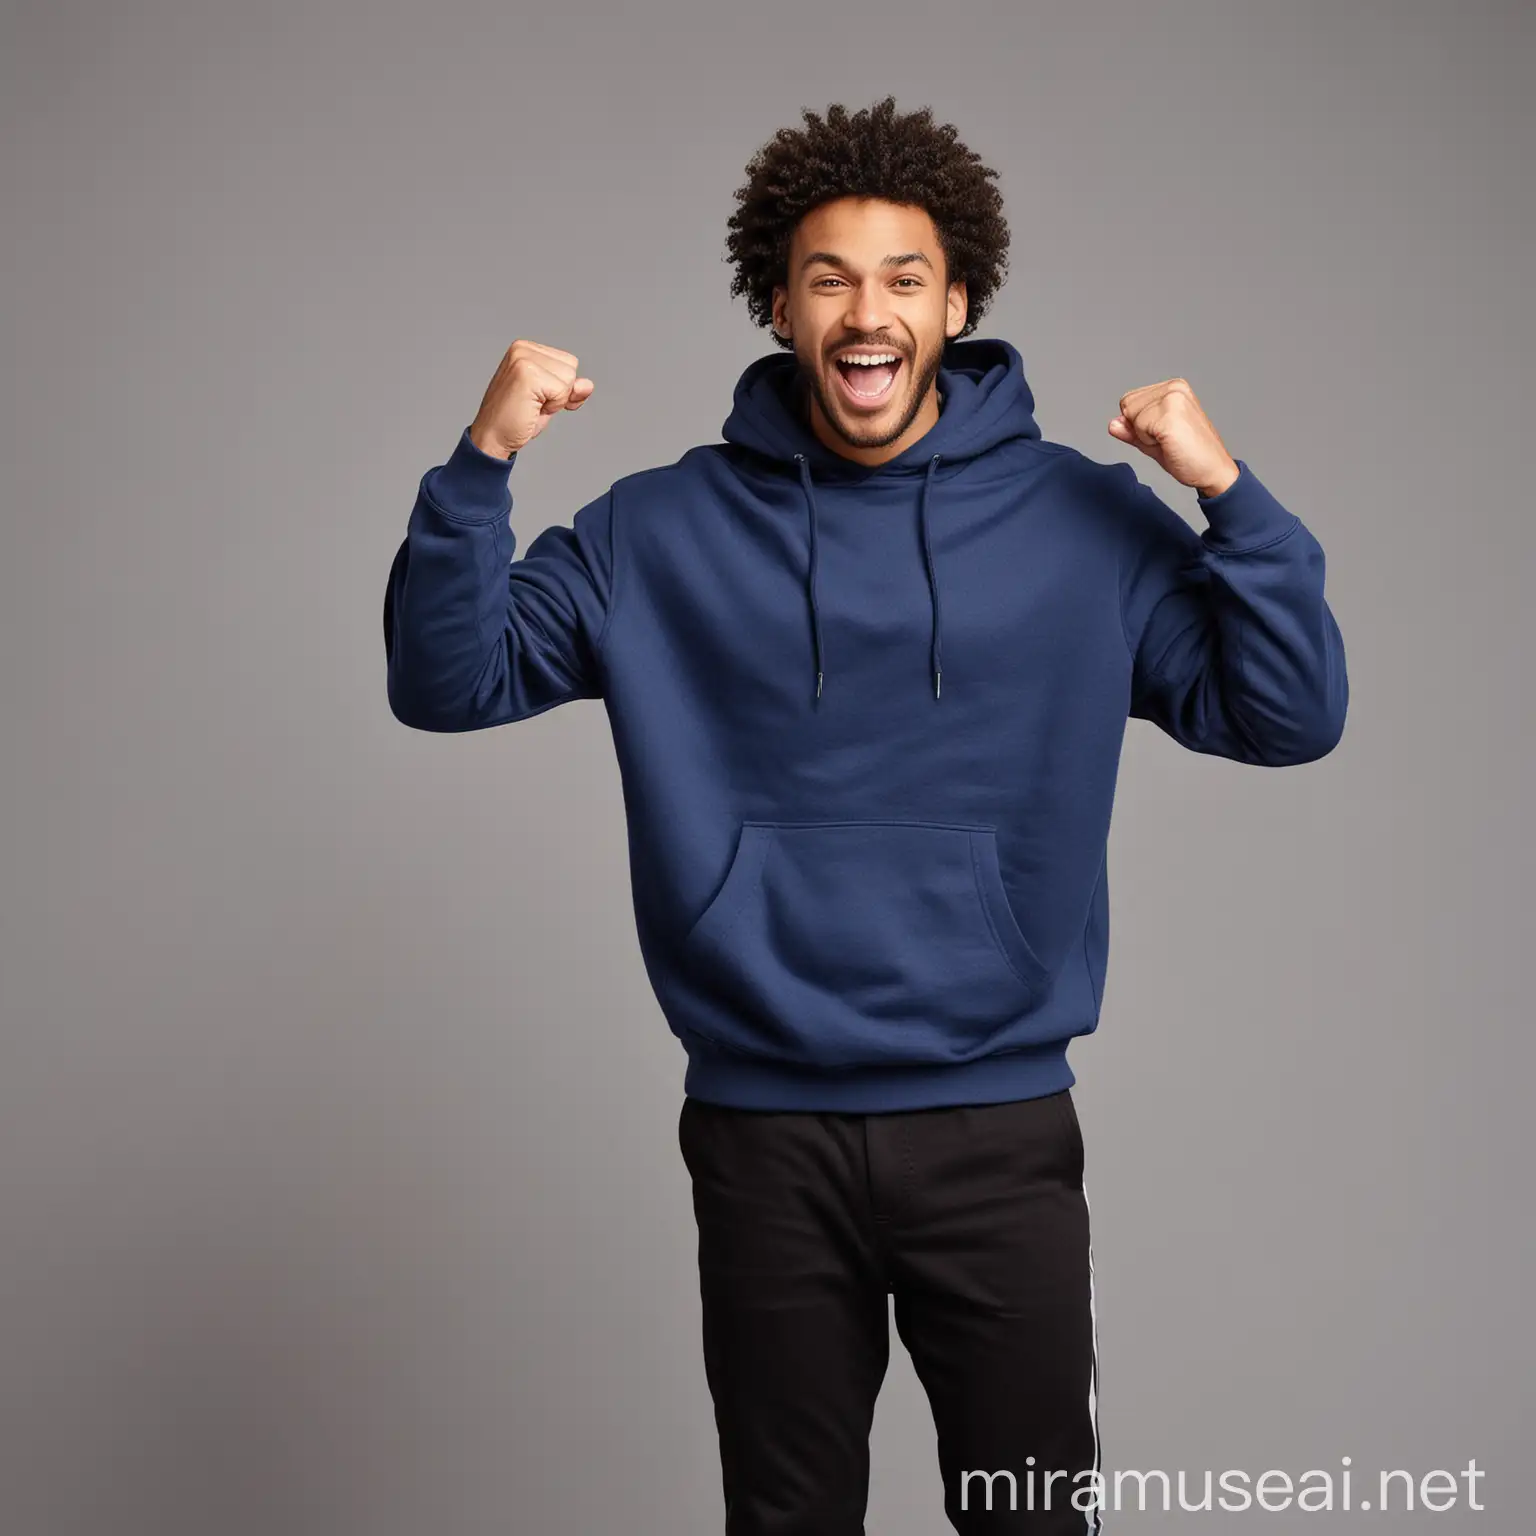 Excited Black Curly Guy Celebrating Victory in Dark Blue Sweatshirt